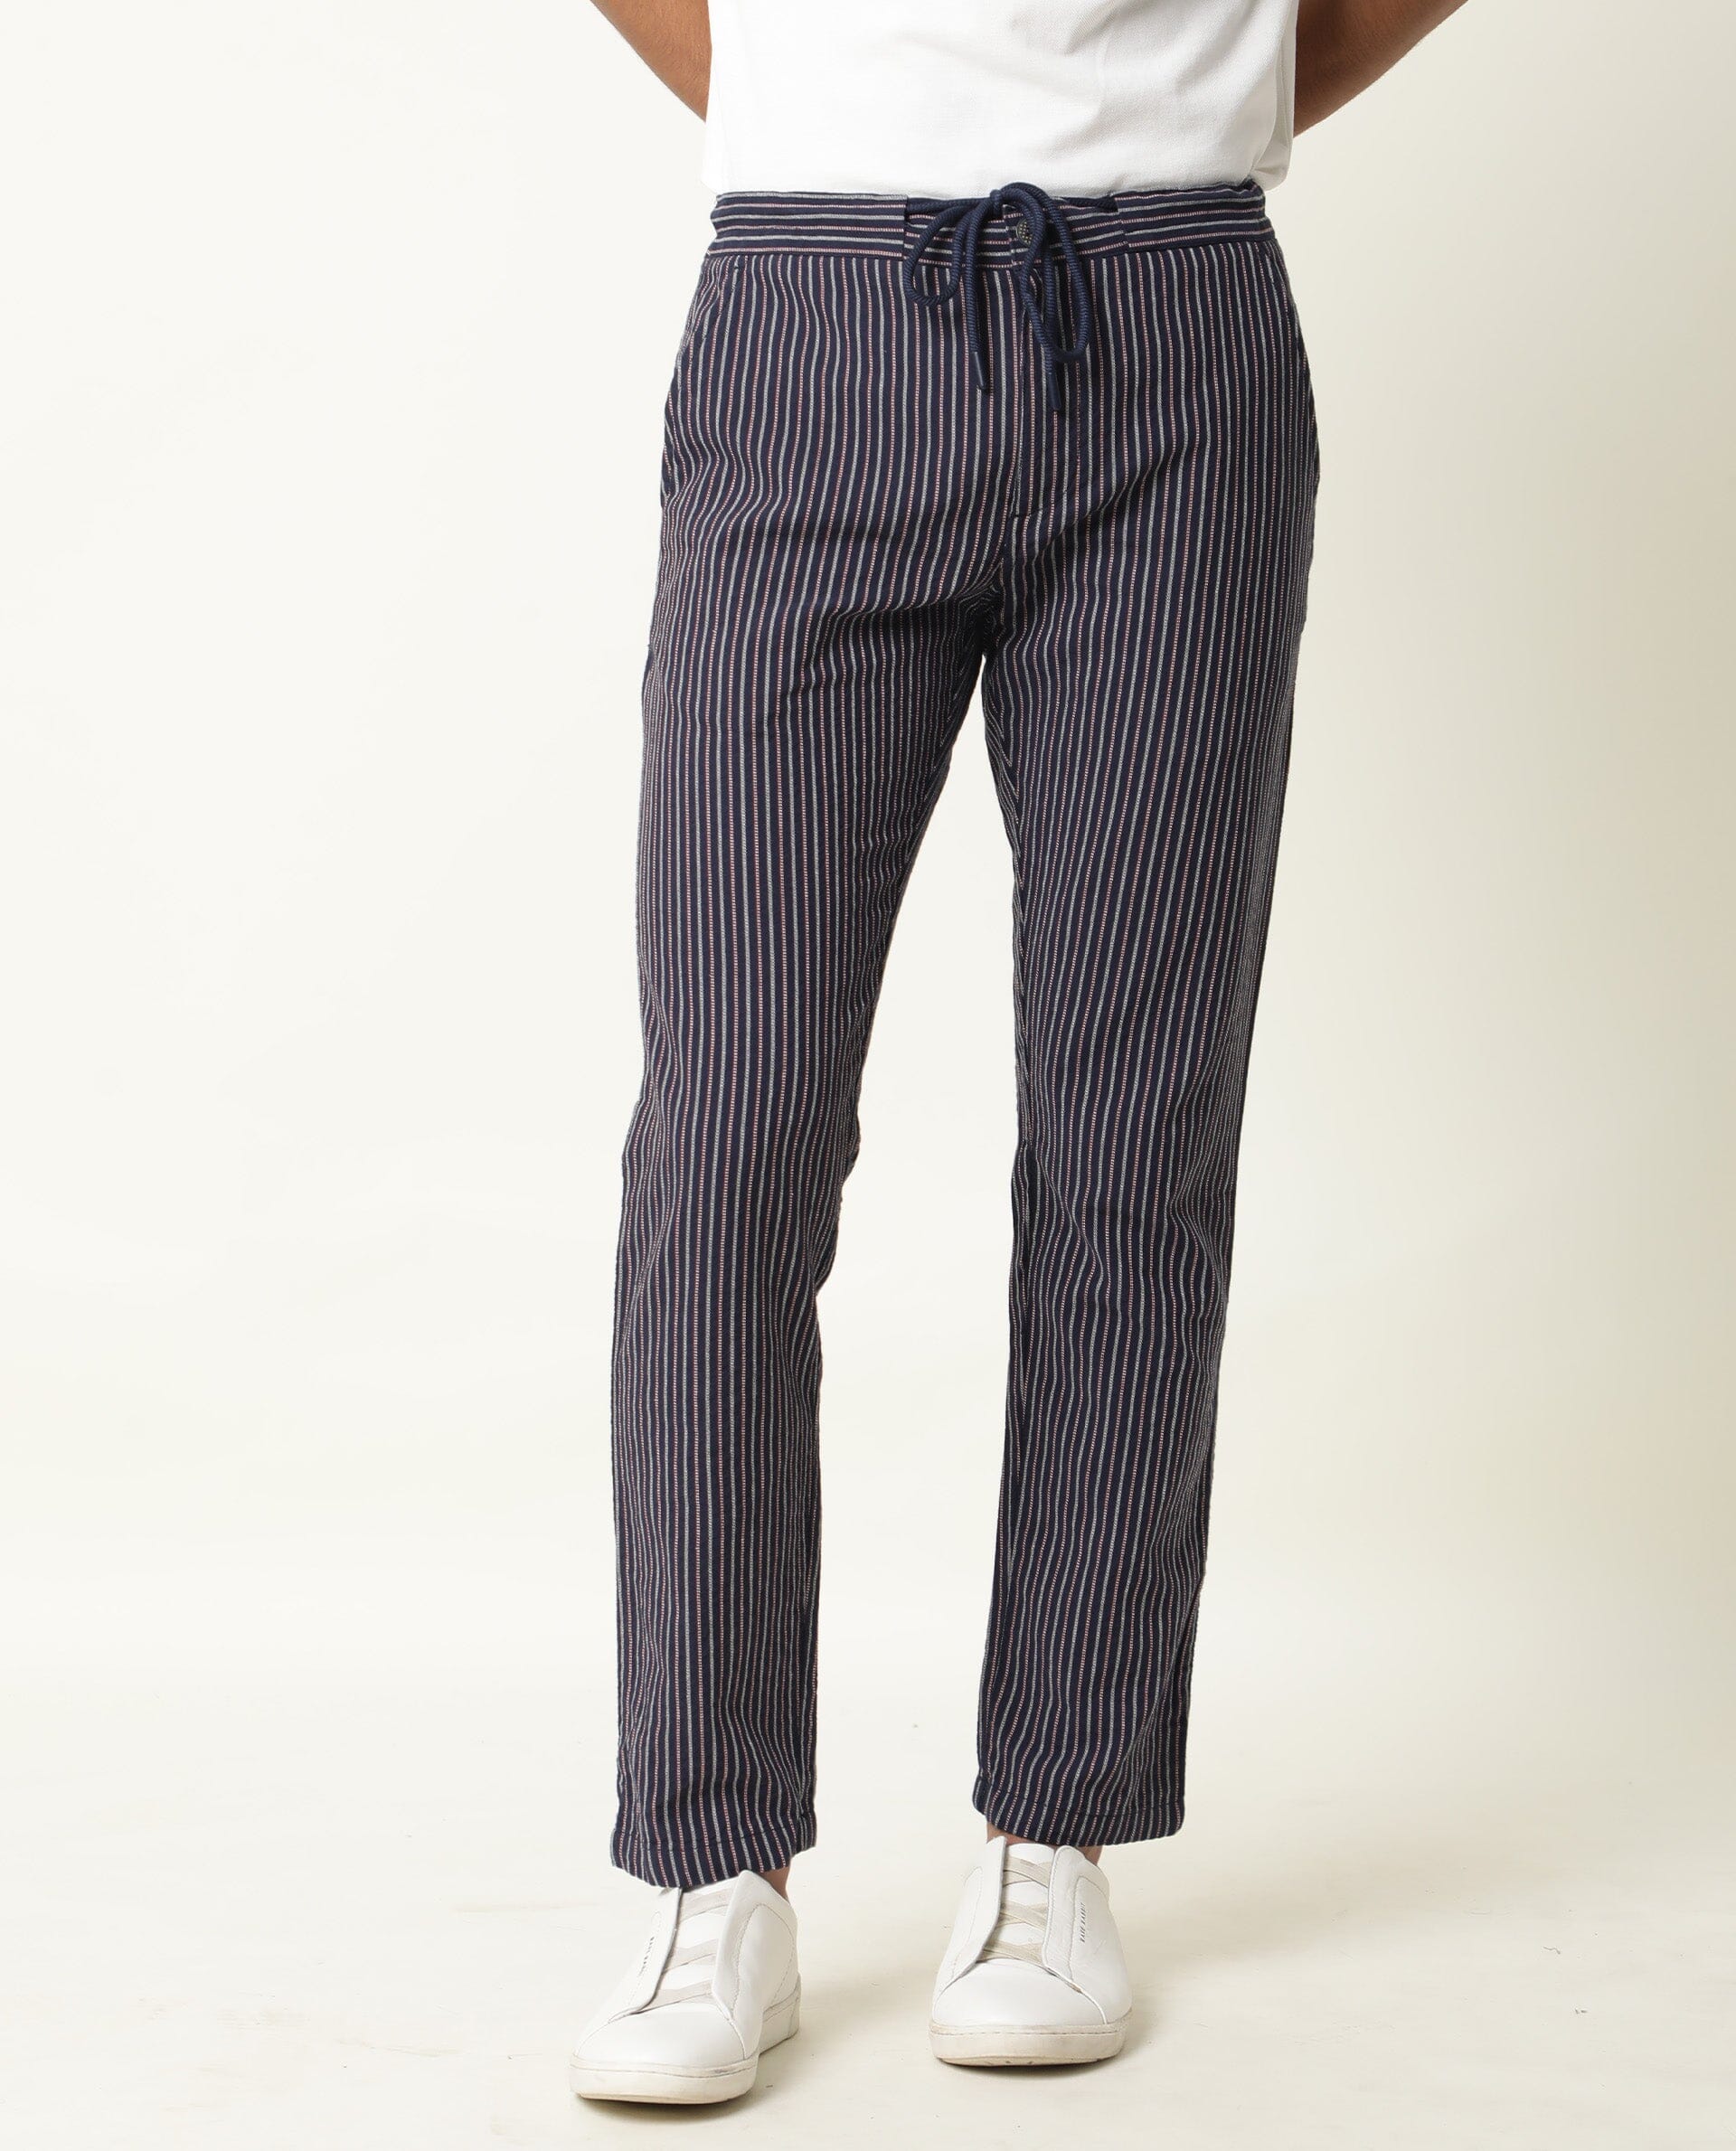 Buy Women White Regular Fit Stripe Casual Trousers Online  751528  Allen  Solly